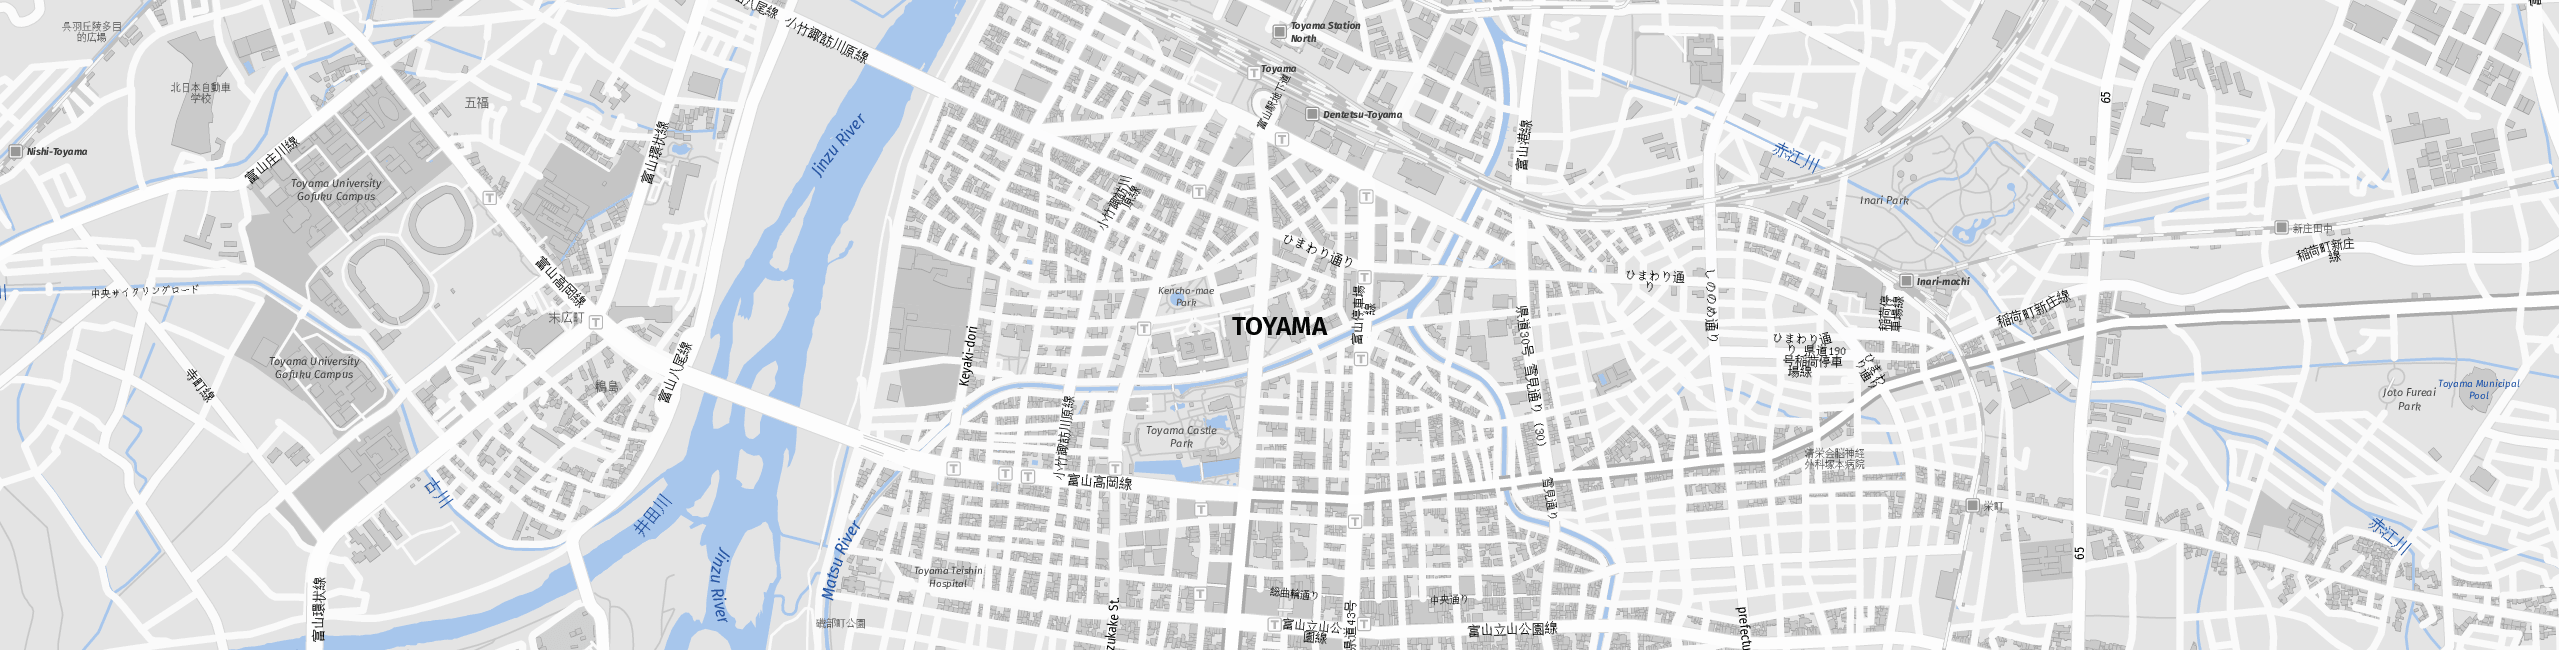 Stadtplan Toyama zum Downloaden.